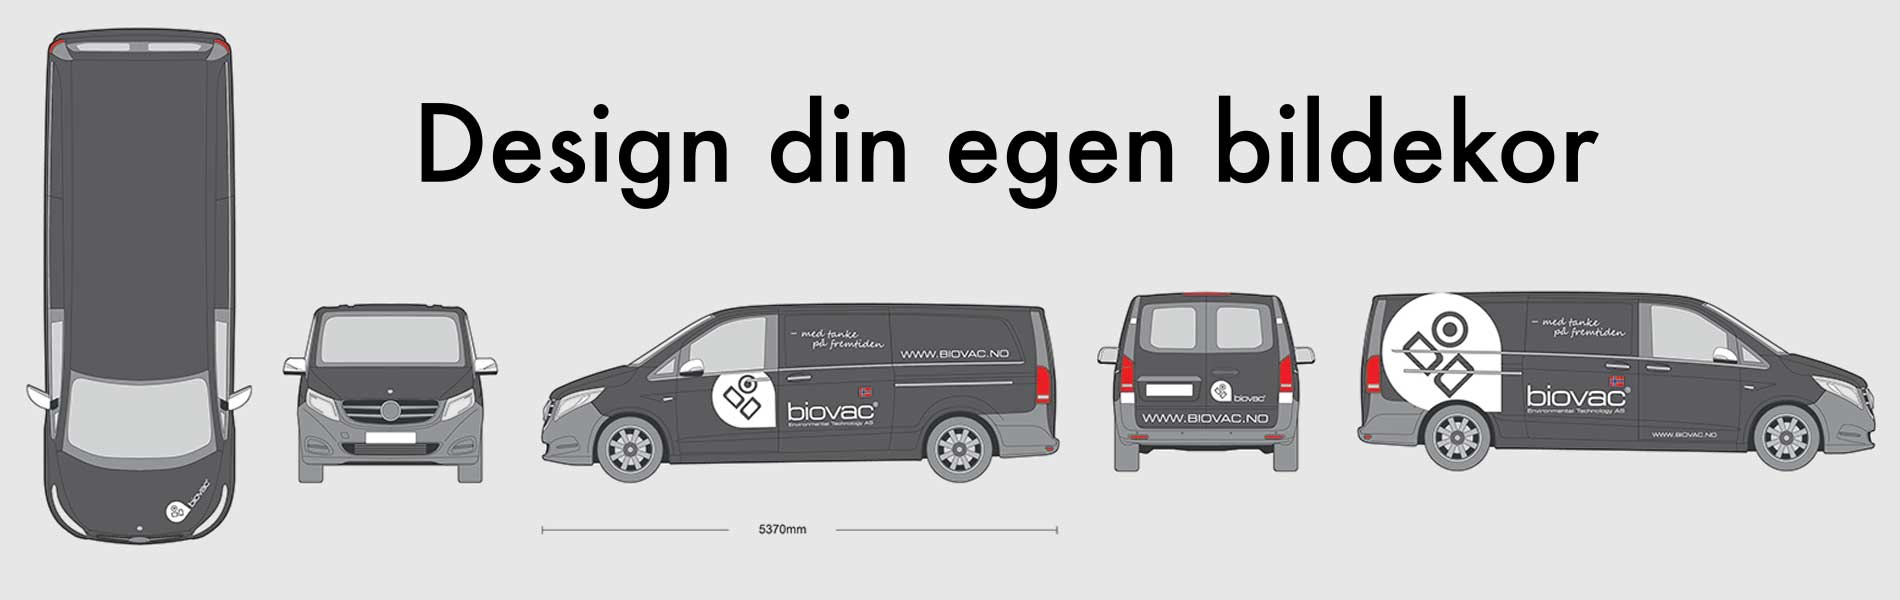 Viser eksempel på bildekor, med bilder av bil fra alle kanter med Biobacs logo